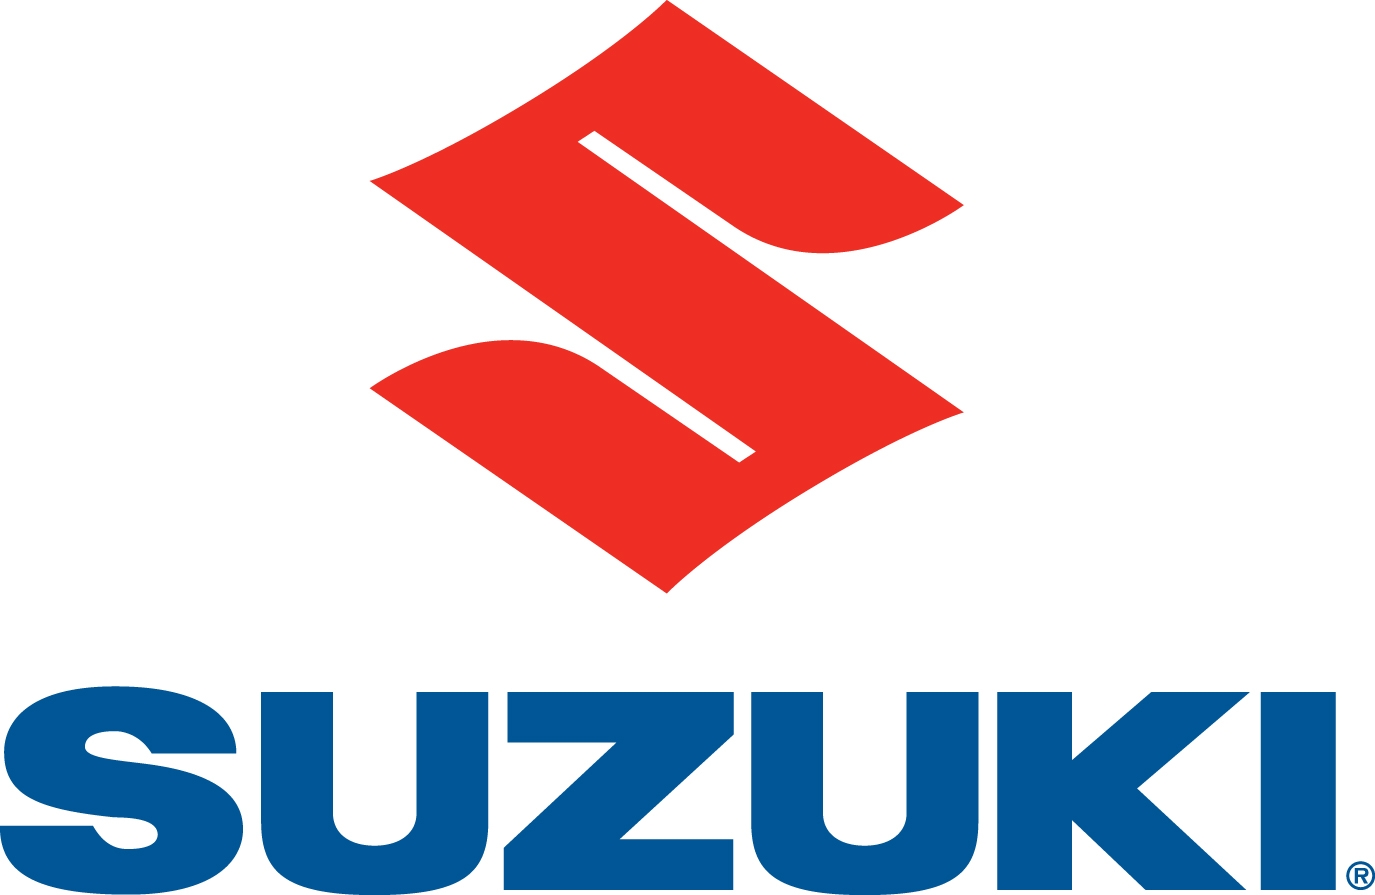 suzuki-logo-5.jpg